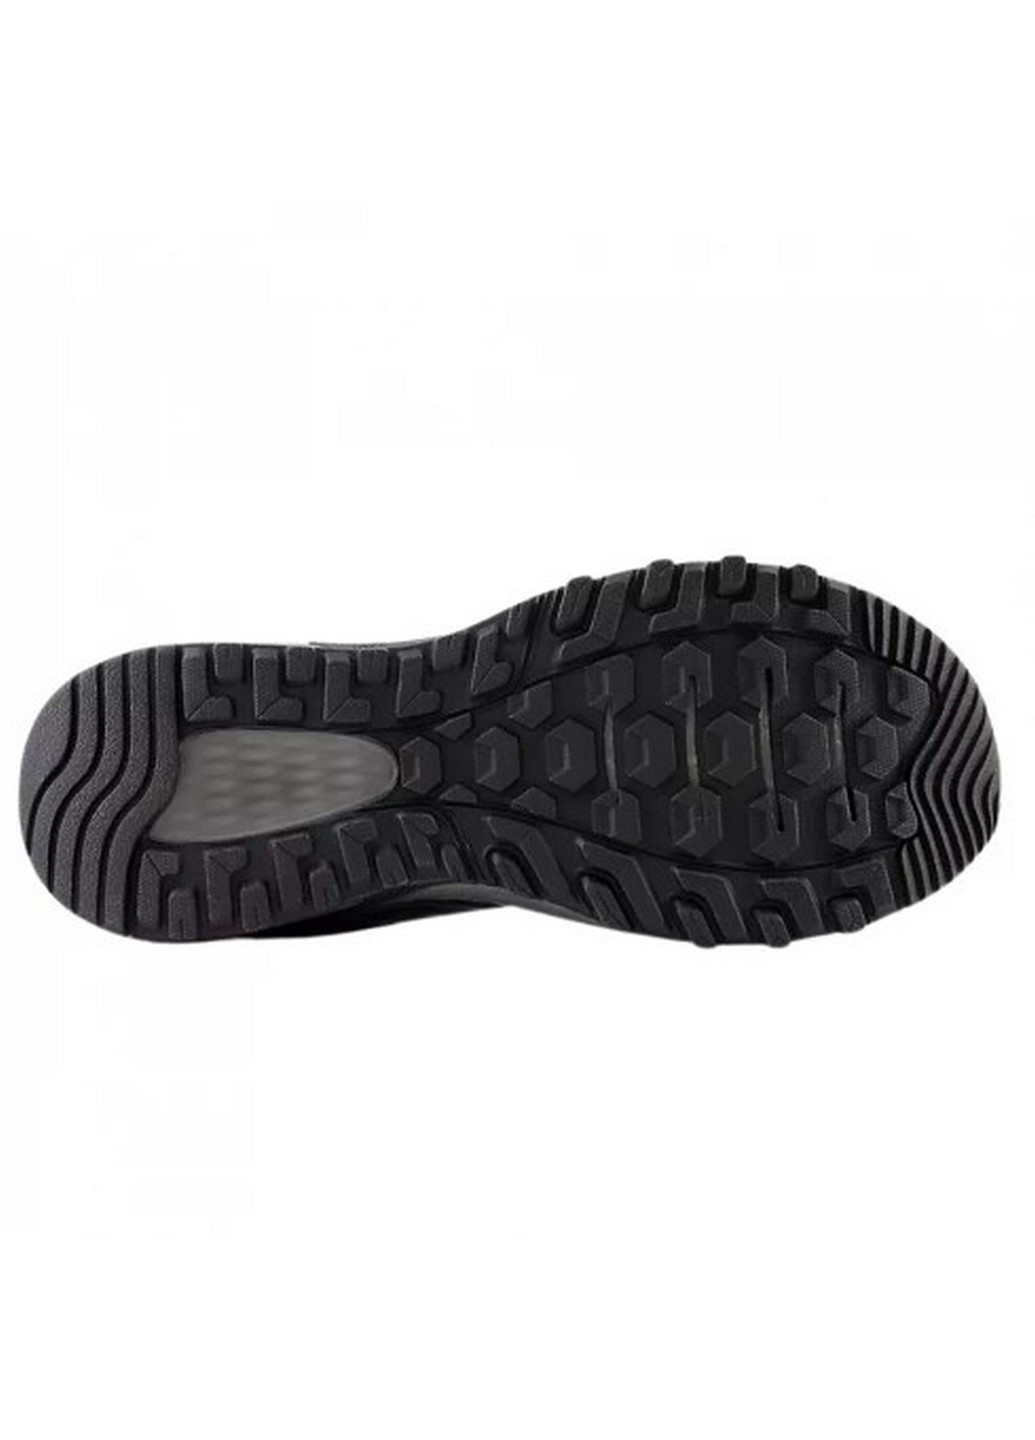 Черные всесезонные мужские беговые кроссовки 410 mt410lb8 New Balance